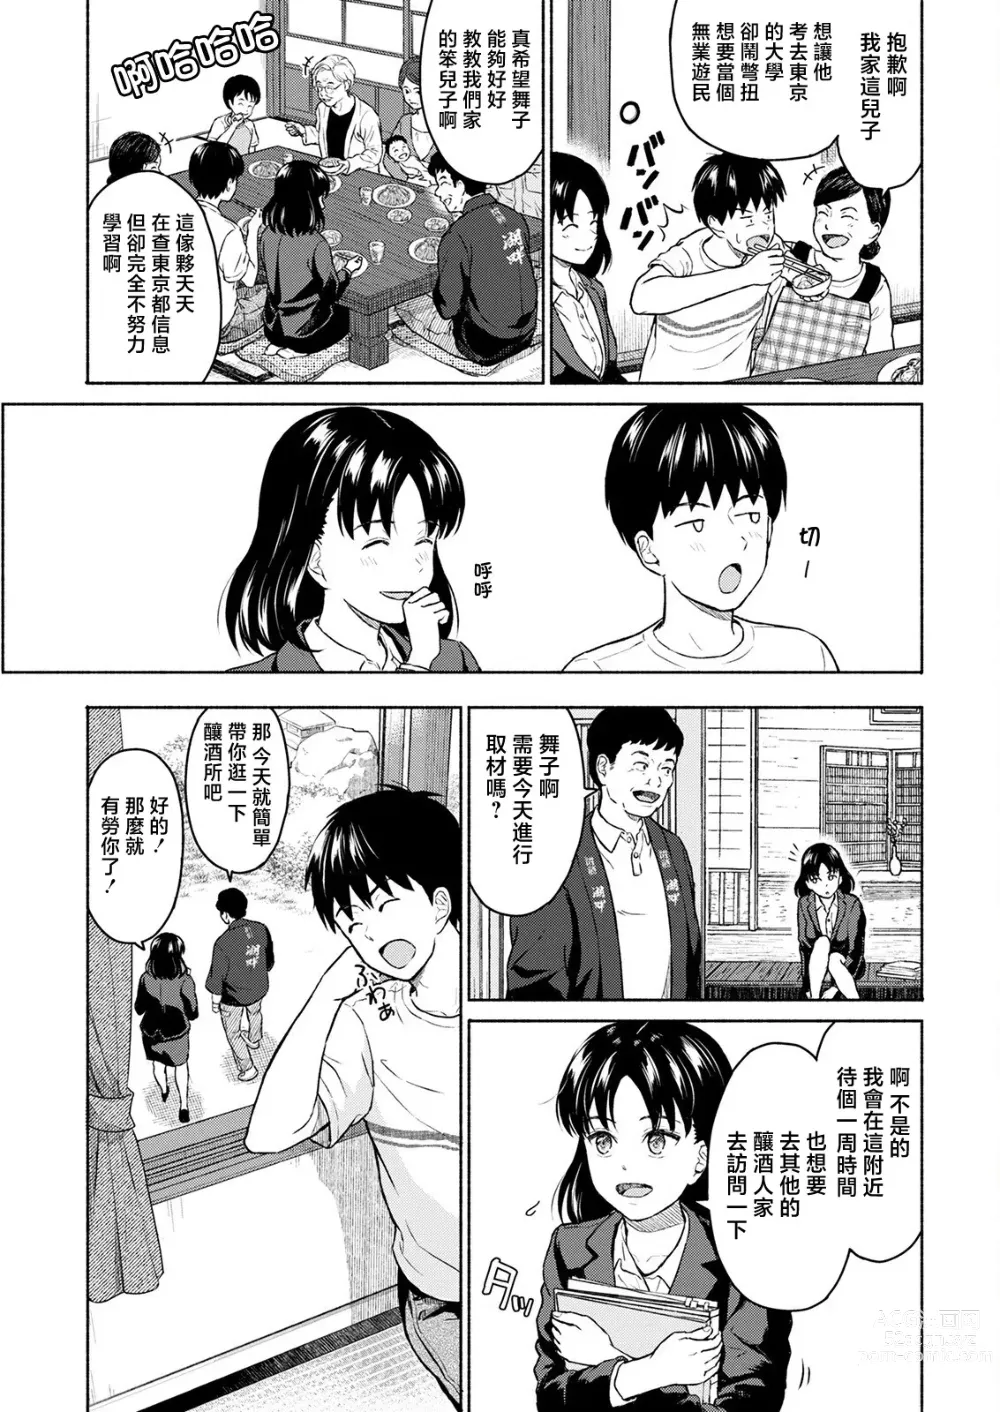 Page 7 of manga Marude Rokugatsu no Kohan o Fuku Kaze no you ni Zenpen